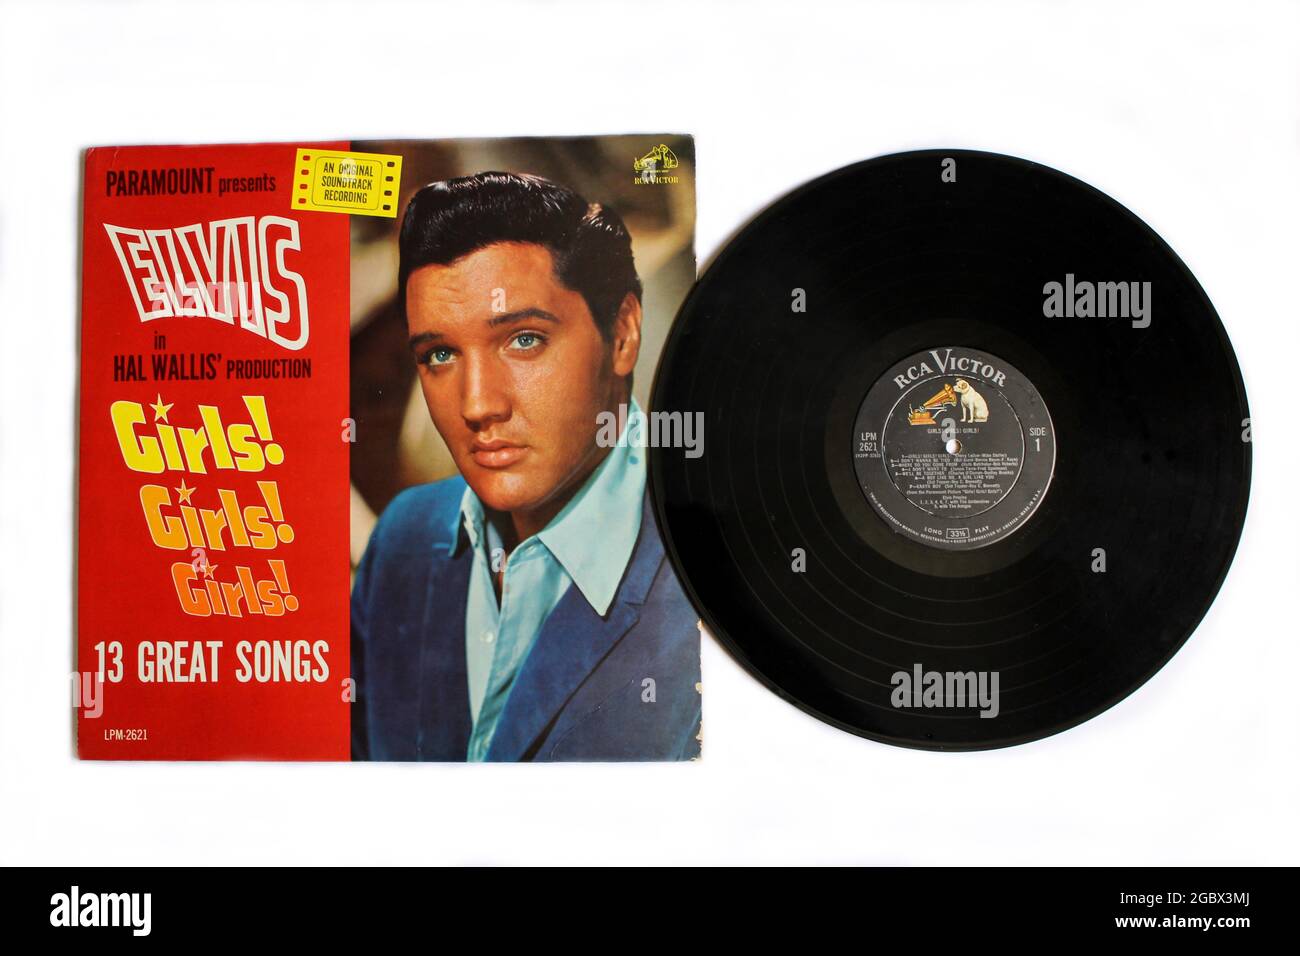 Rock und Gospel Künstler Elvis Film Musik Album auf Vinyl Schallplatte LP Disc. Mädels! Mädels! Mädels! Ist ein Soundtrack-Album des amerikanischen Sängers Elvis Presley Stockfoto